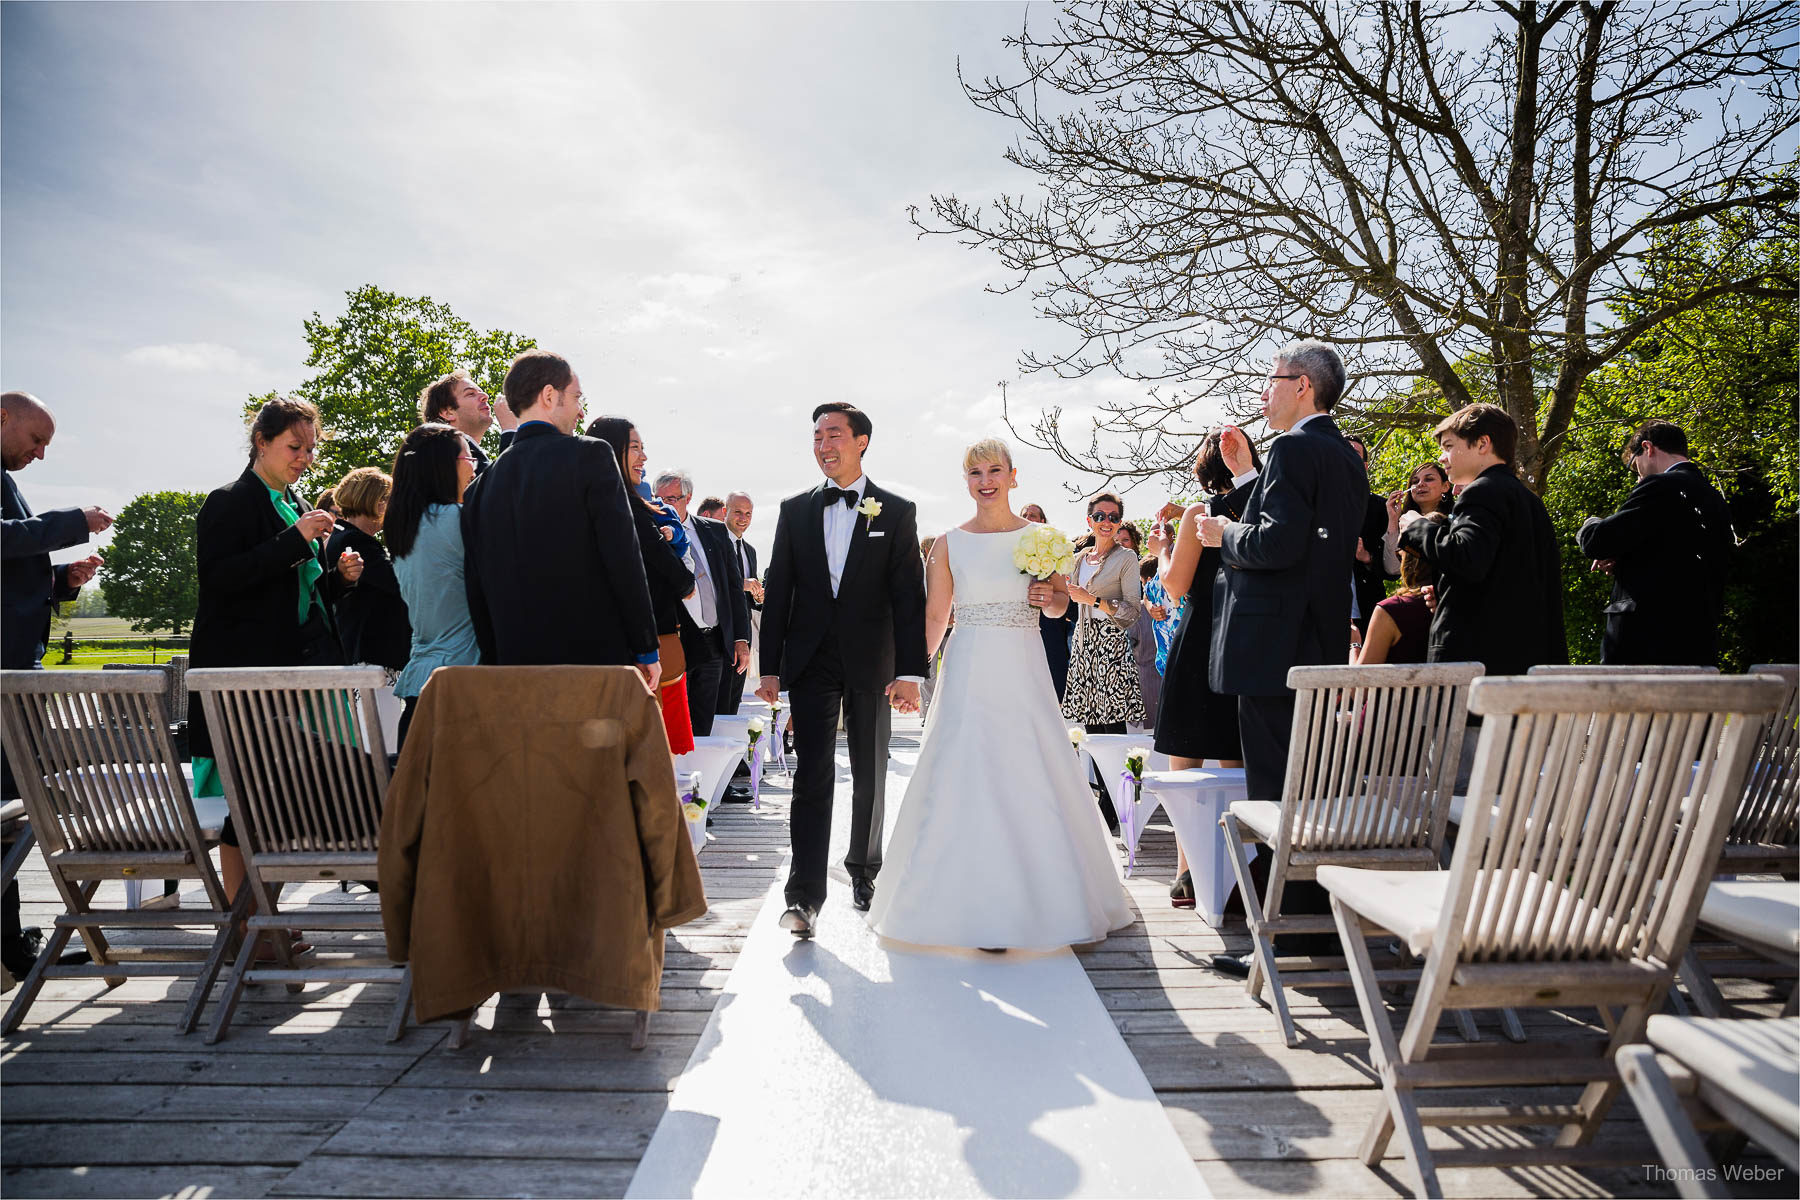 Freie Trauung in der Eventscheune St. Georg in Rastede, Hochzeitsfotograf Ostfriesland